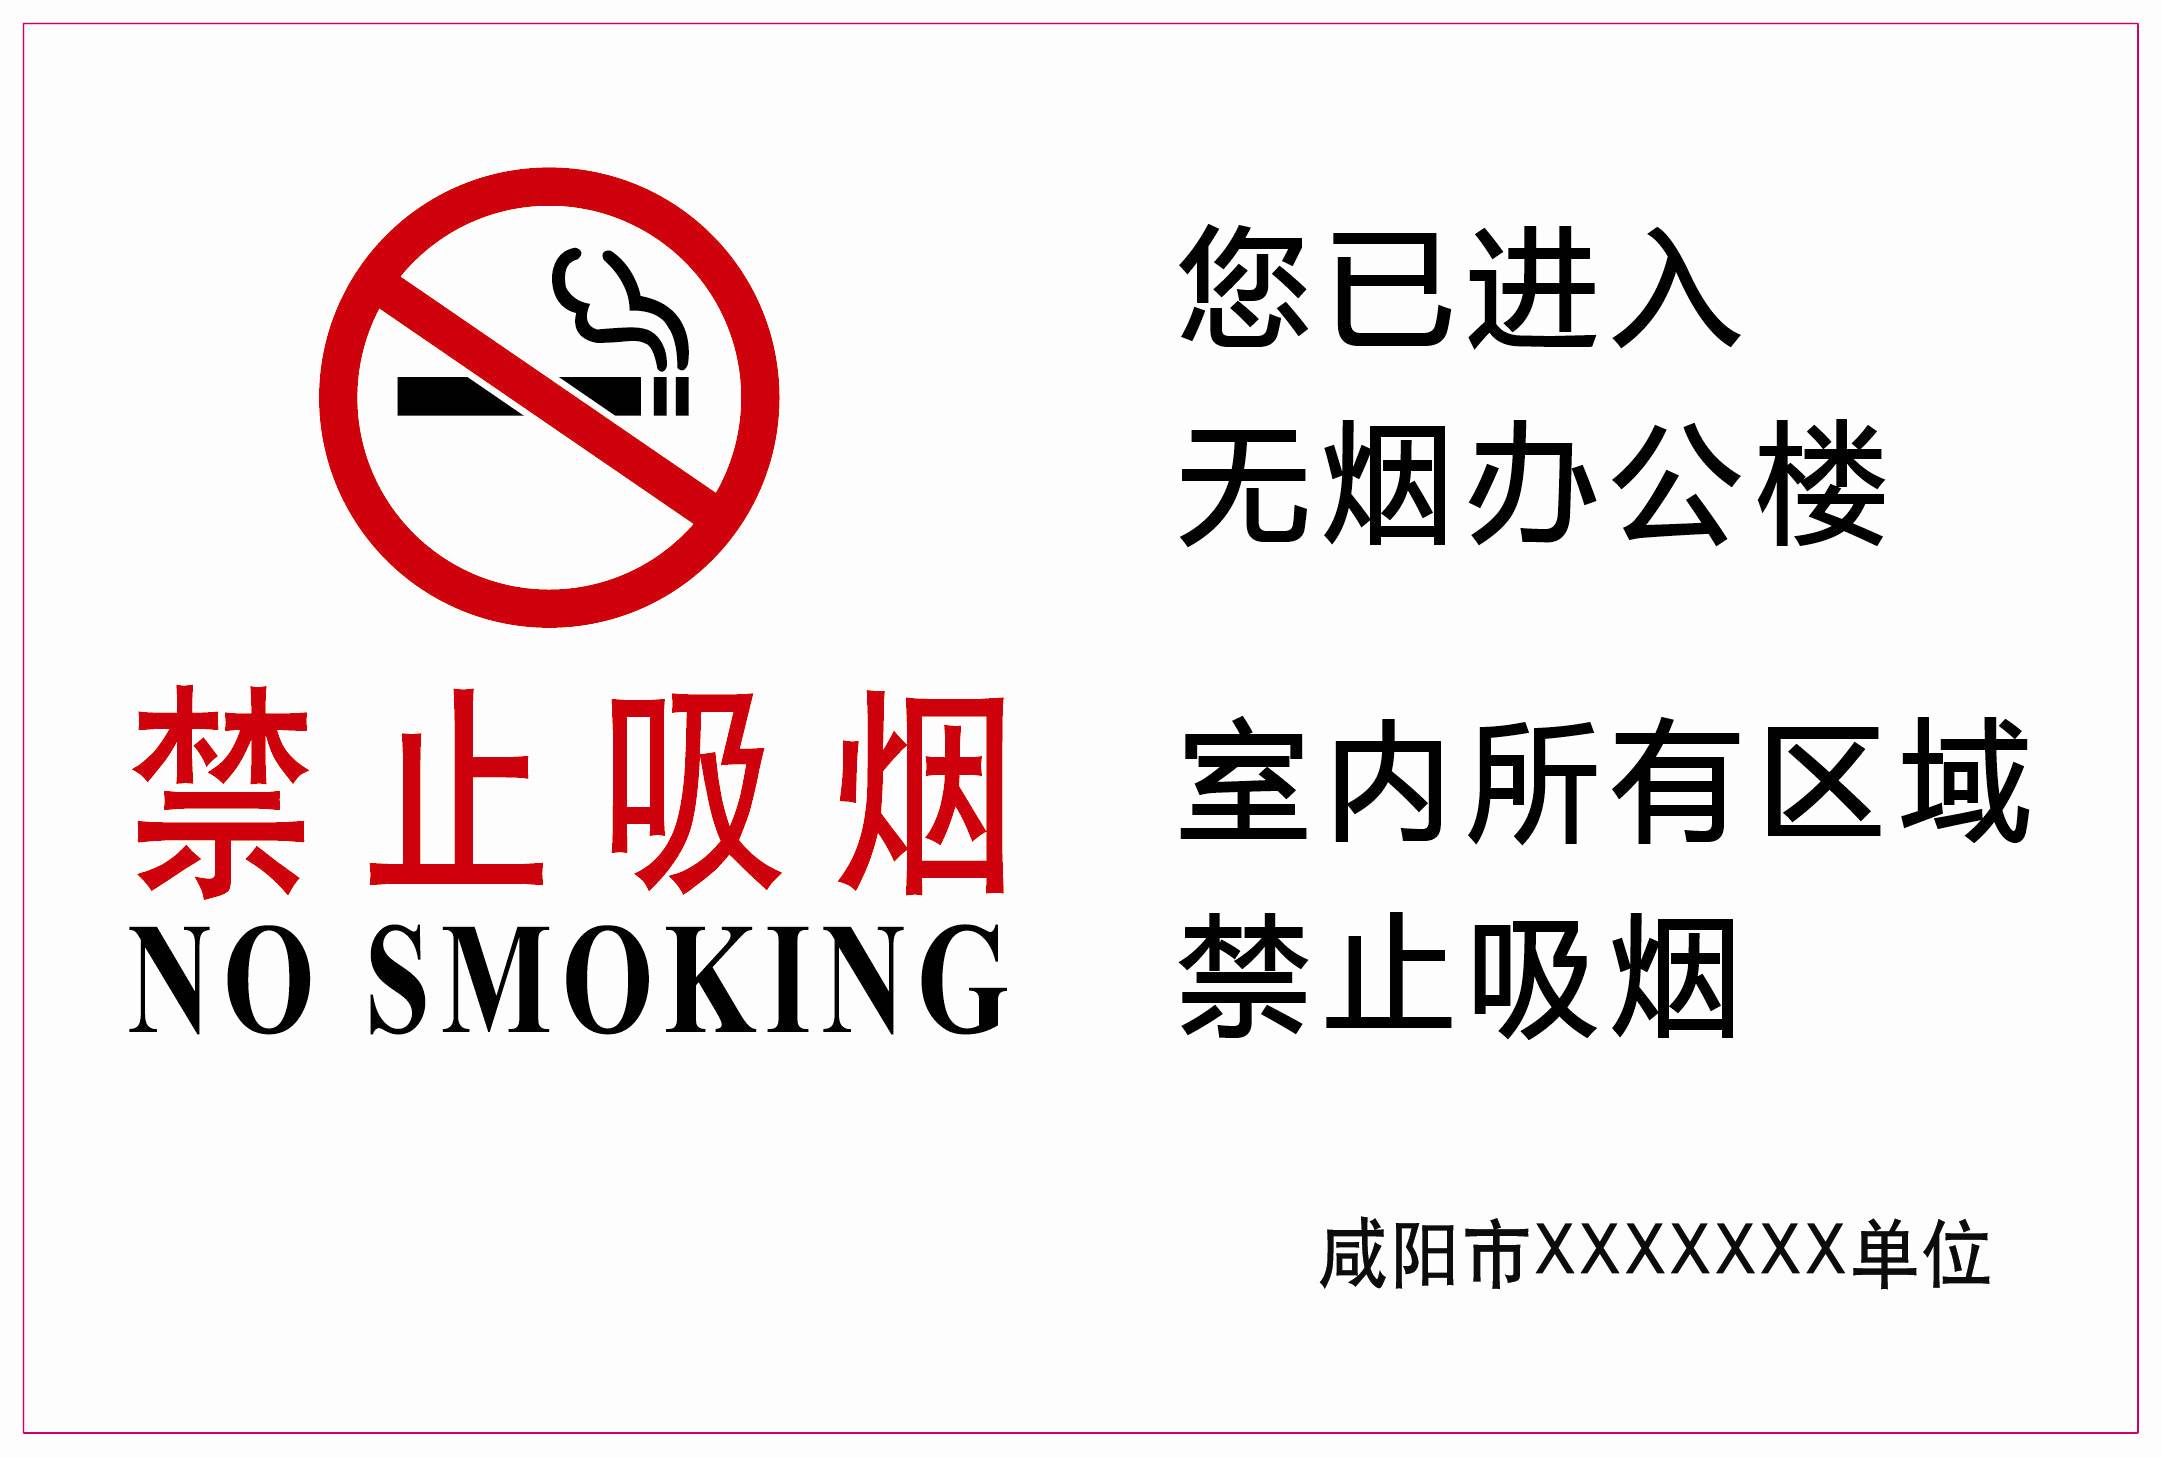 咸阳市统一规范"禁烟标识" 为了健康戒烟吧!